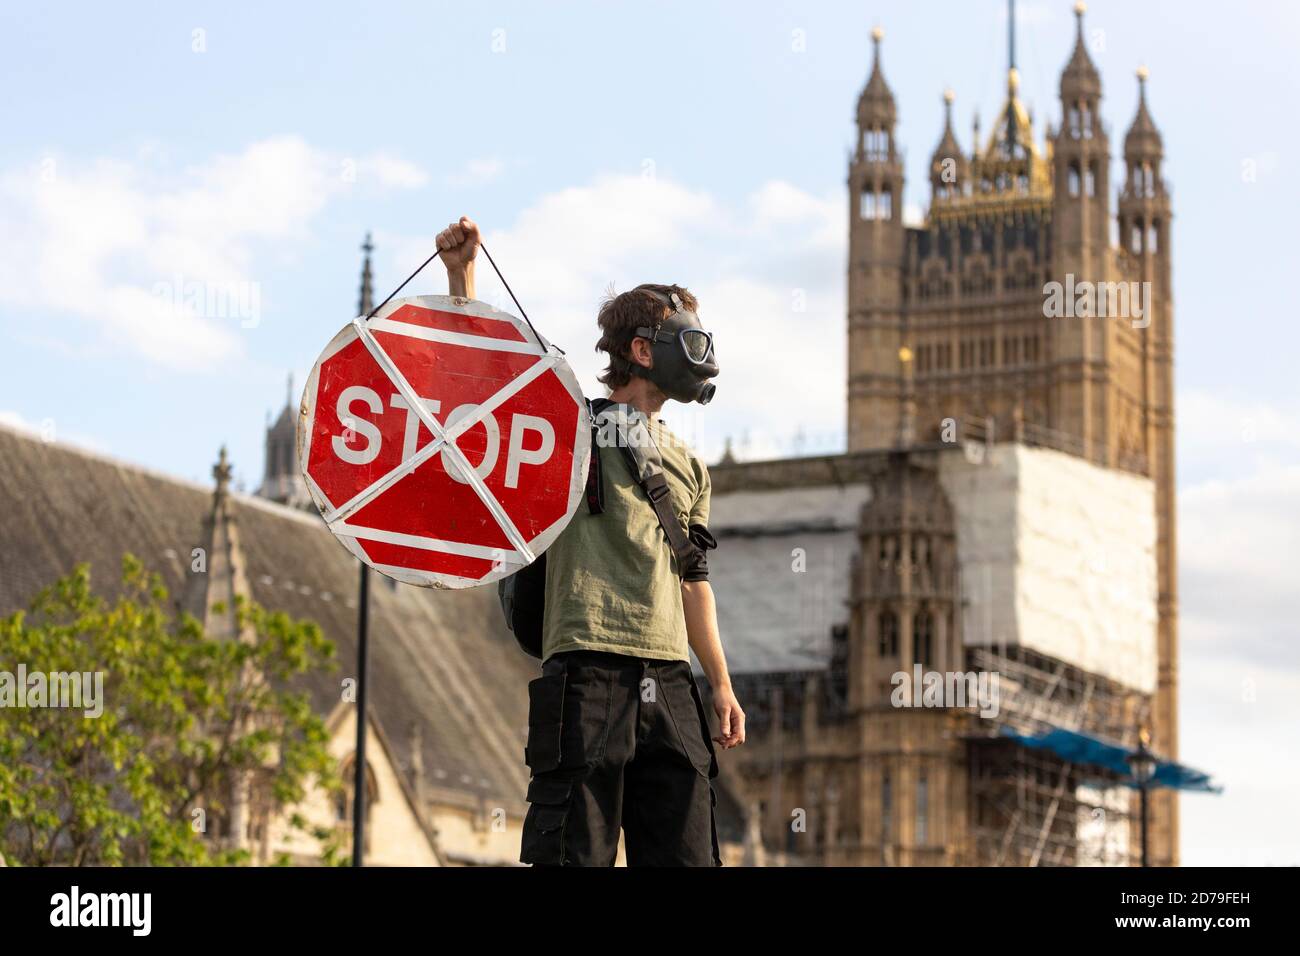 Manifestant dans un masque à gaz portant un panneau d'arrêt lors d'une manifestation de rébellion d'extinction, Parliament Square, Londres, 10 septembre 2020 Banque D'Images